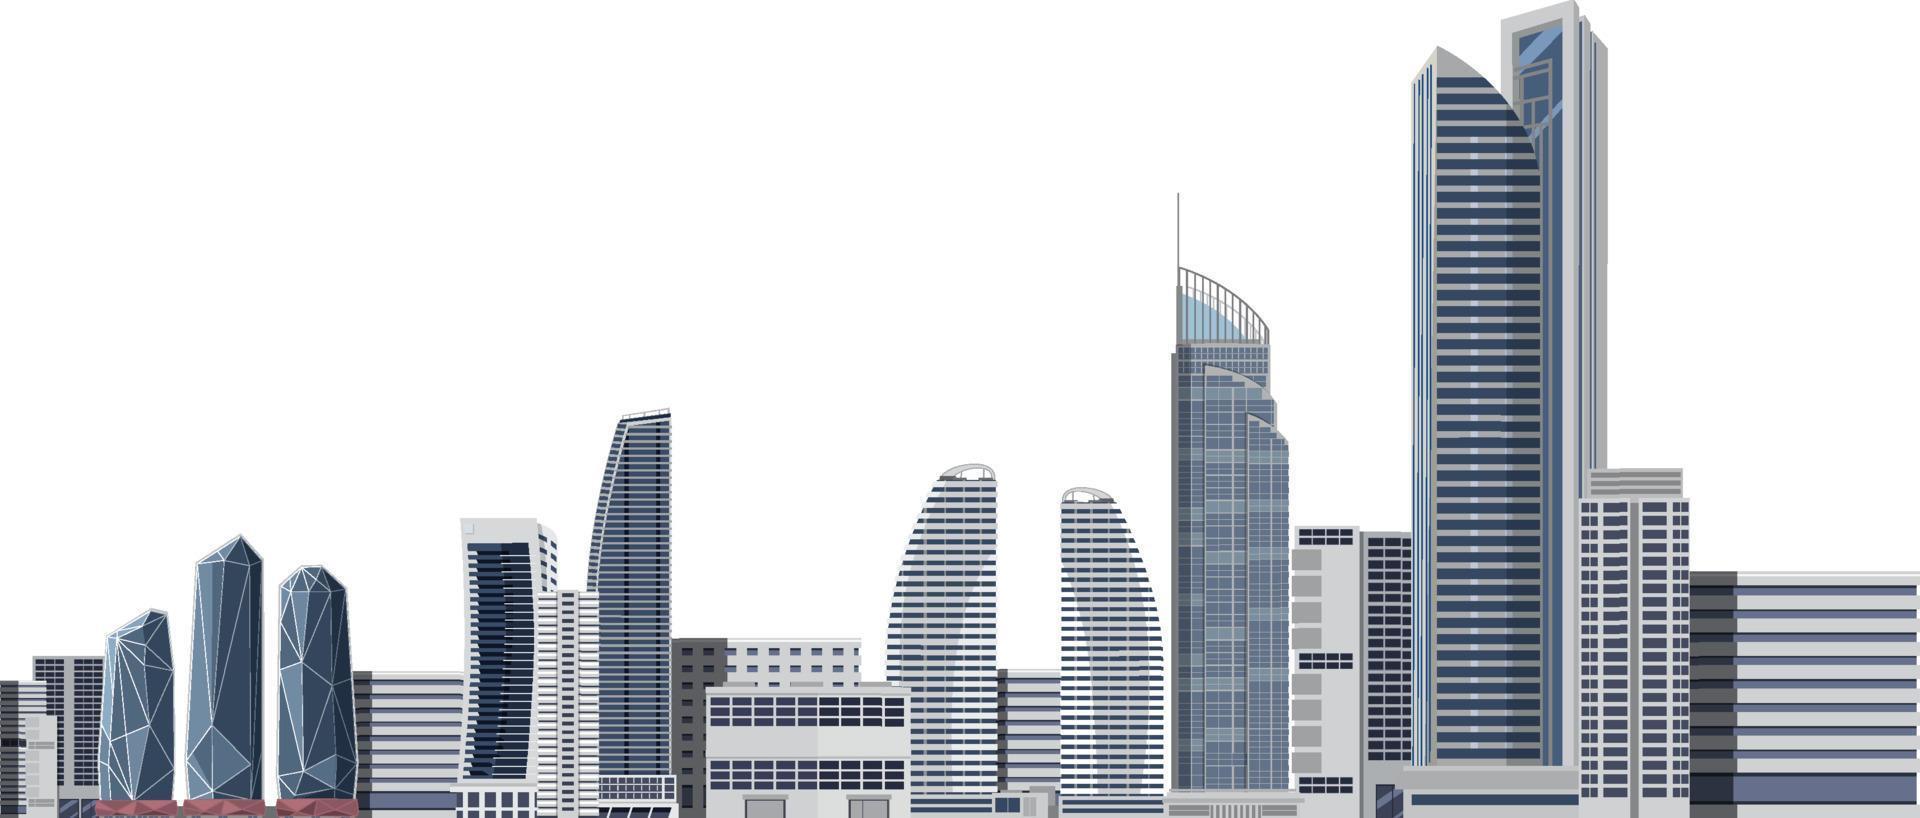 staden skyskrapa byggnader på vit bakgrund vektor